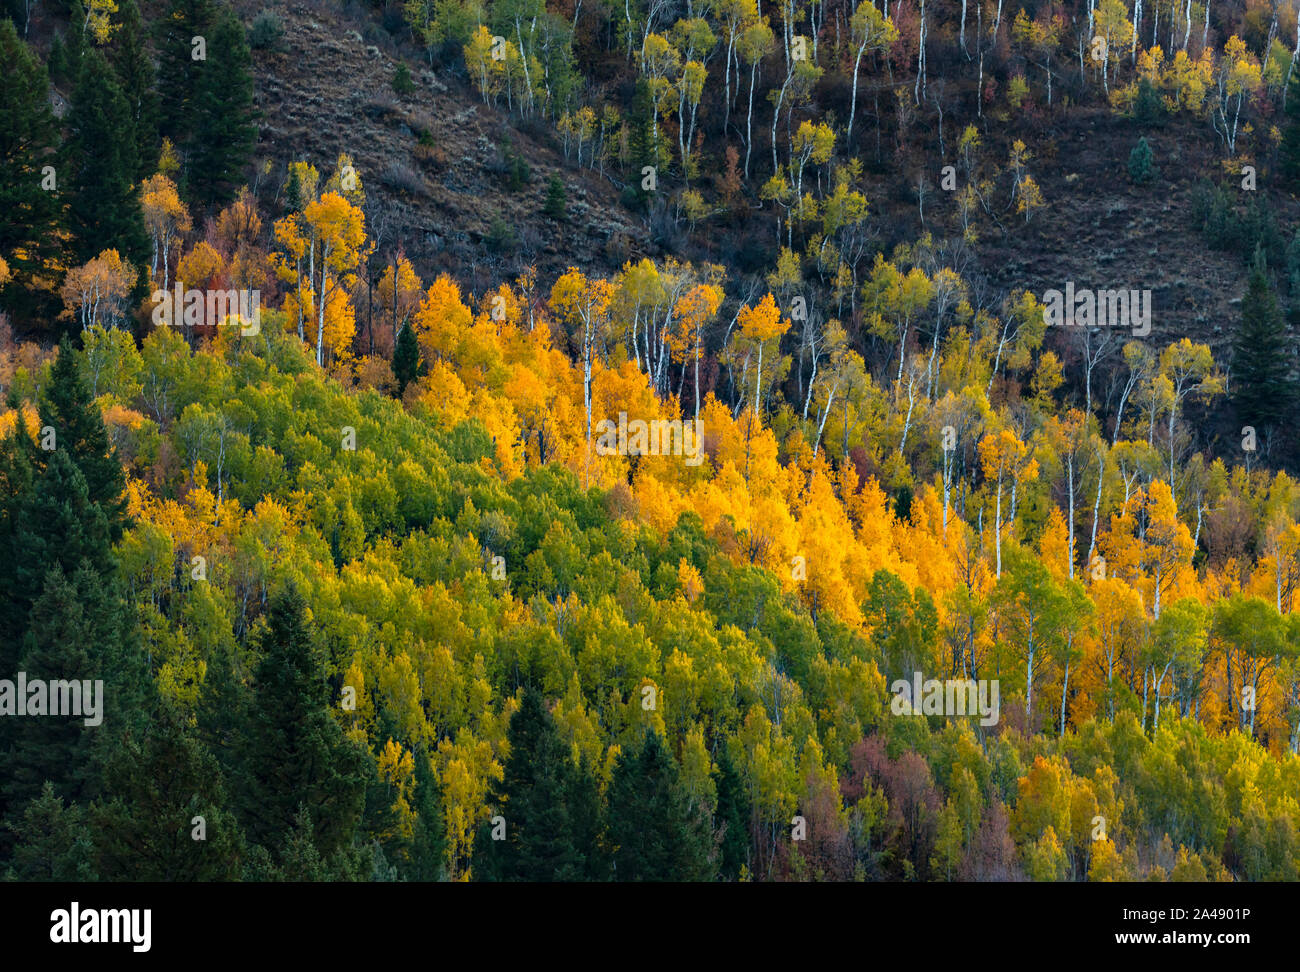 Les couleurs de l'automne sur les arbres le long de l'US Highway 89, la Logan Canyon Scenic Byway Logan Canyon, Uinta-Wasatch-Cache National Forest, Utah, USA. Banque D'Images